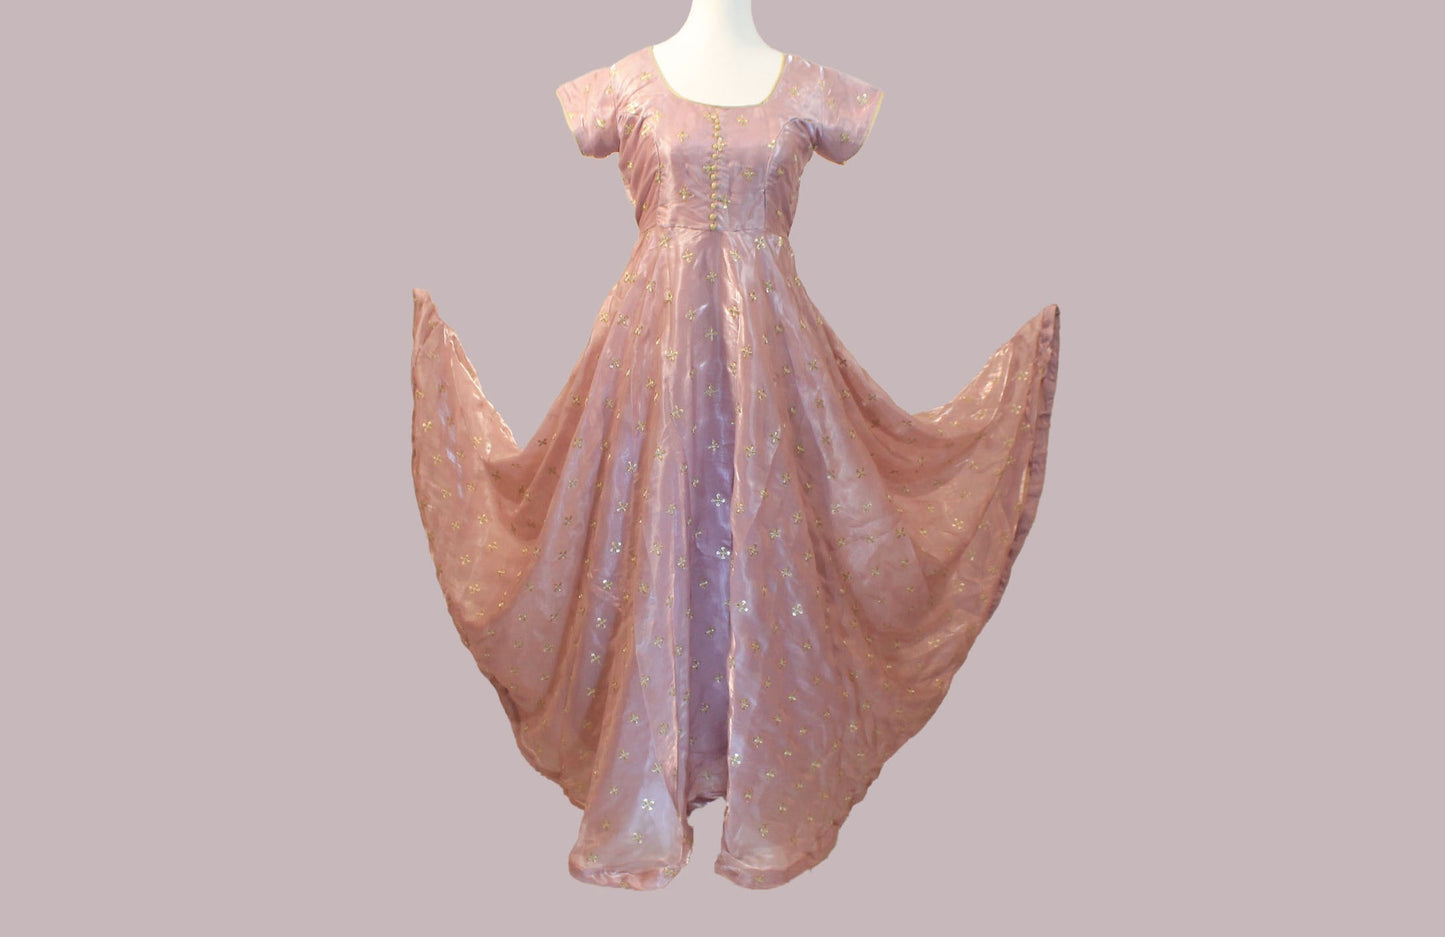 Enchanting Anarkali - Lavender Color Organza Dress with Gold Work